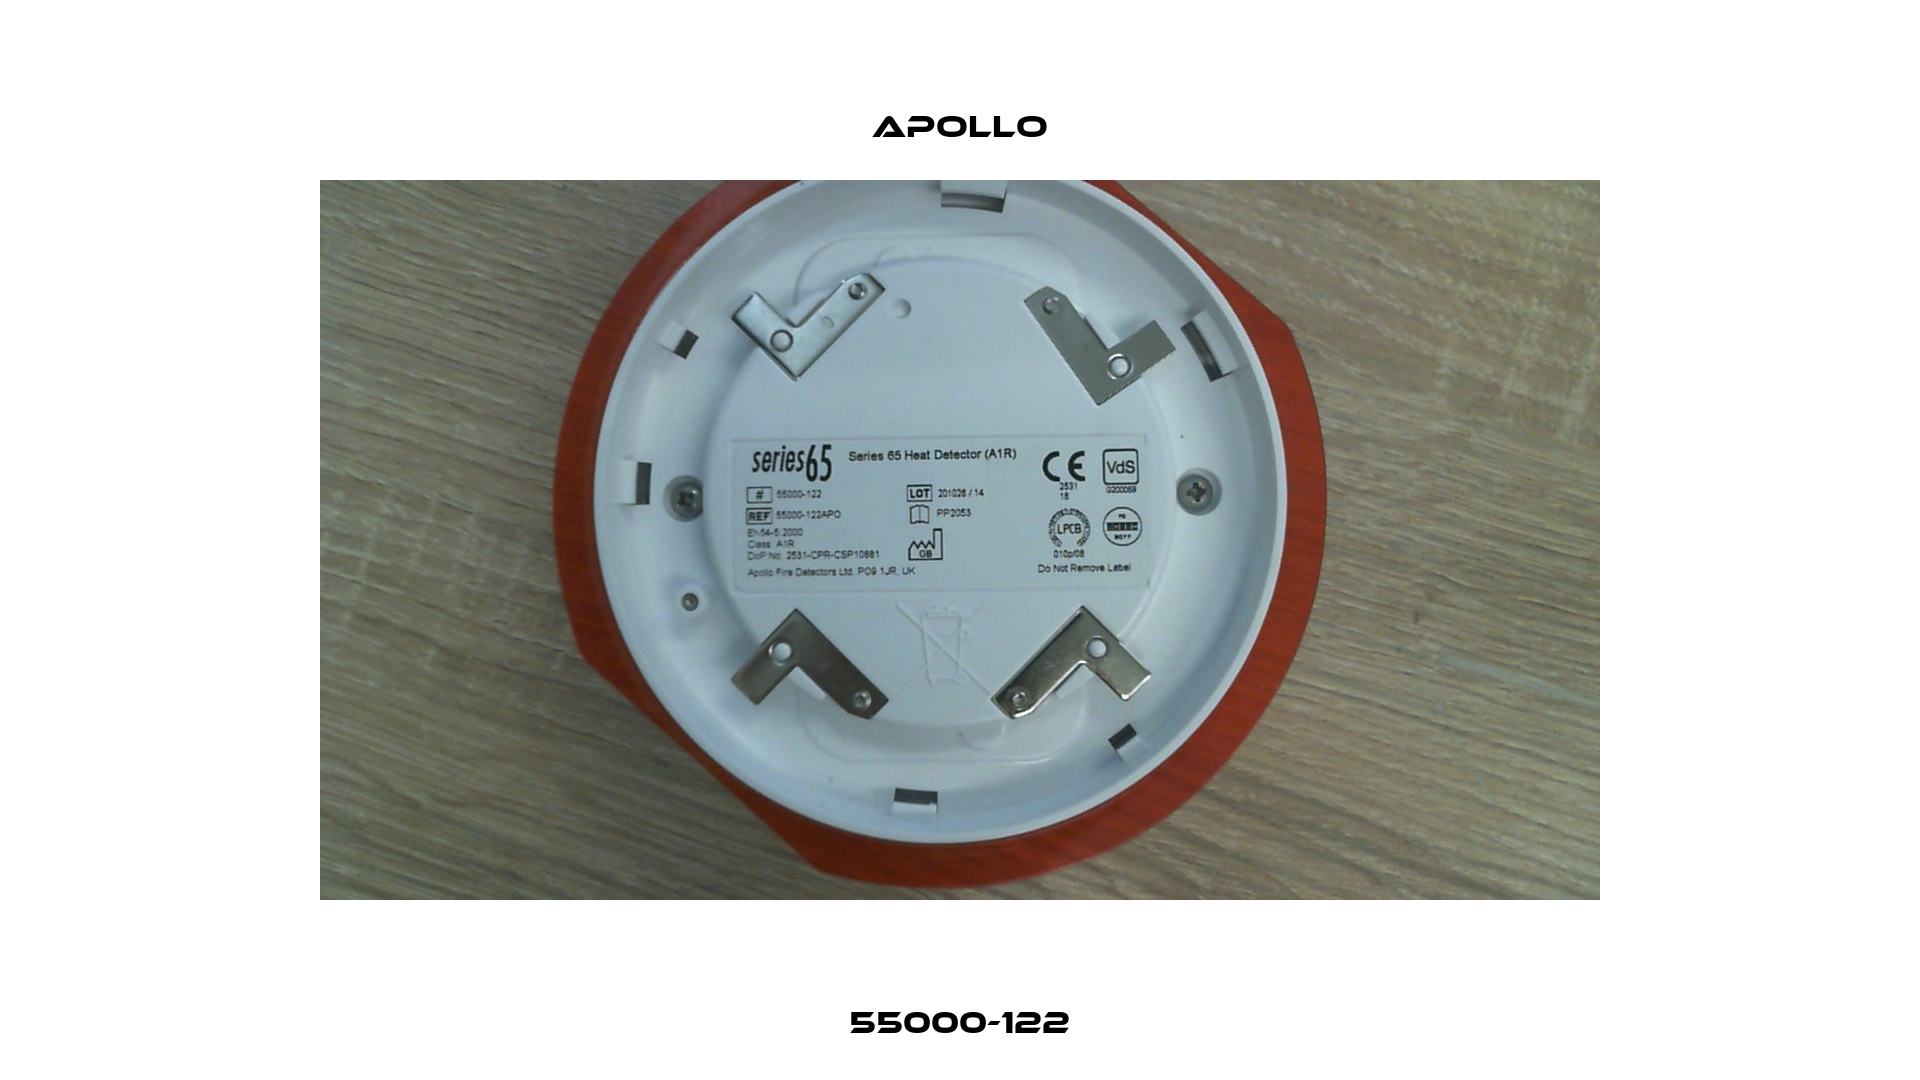 55000-122 Apollo